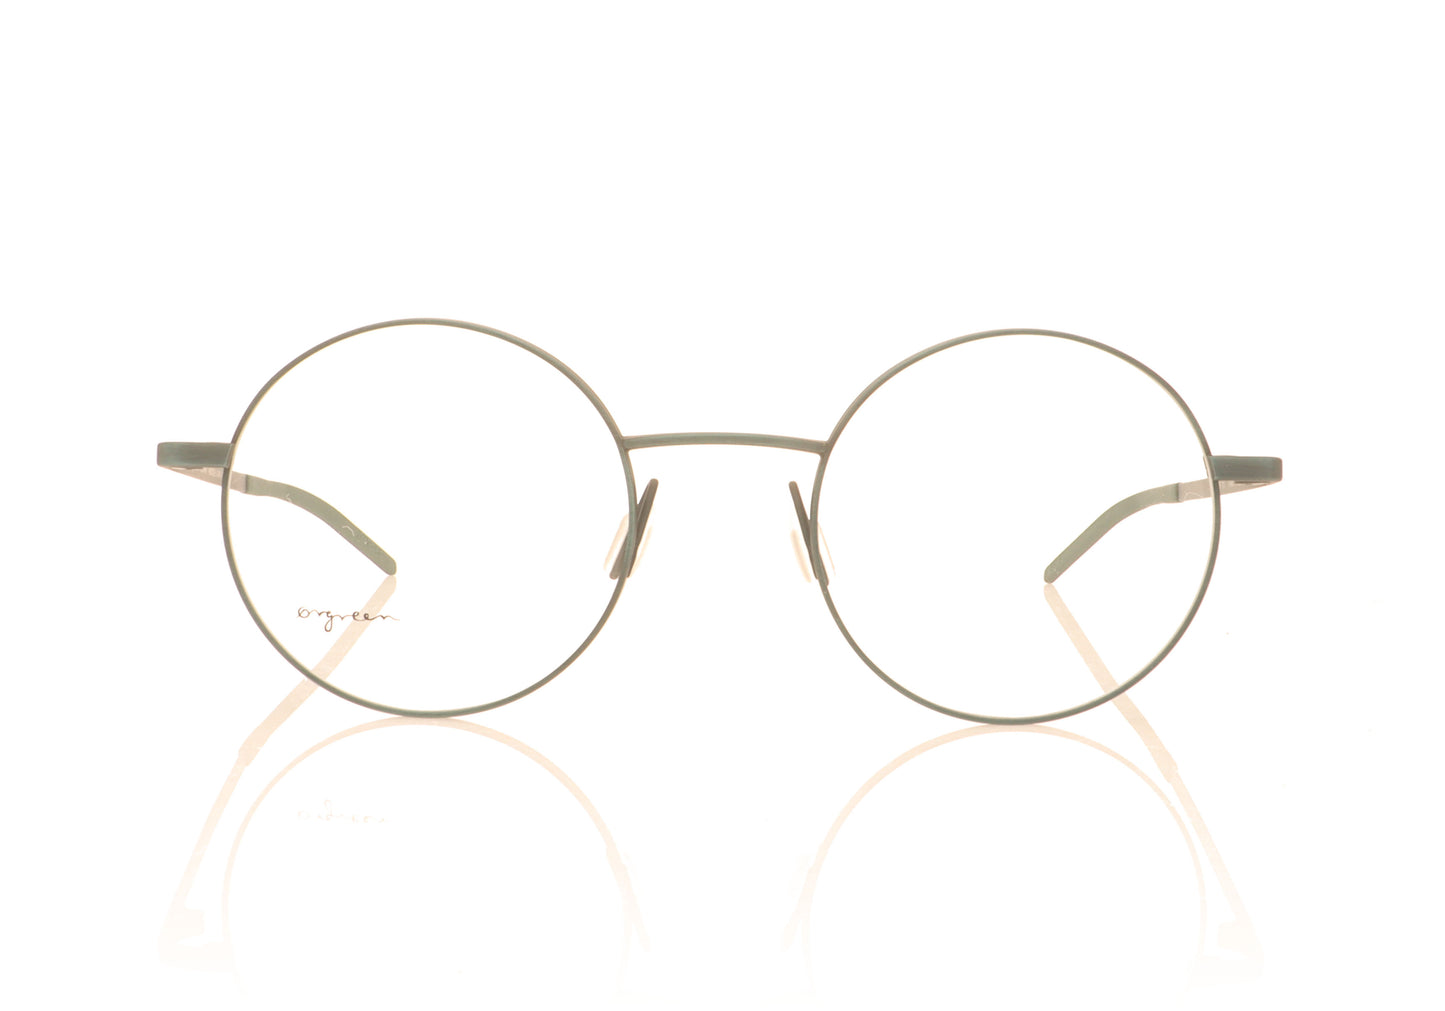 Ørgreen Equator 1113 Antique Teal Glasses - Front